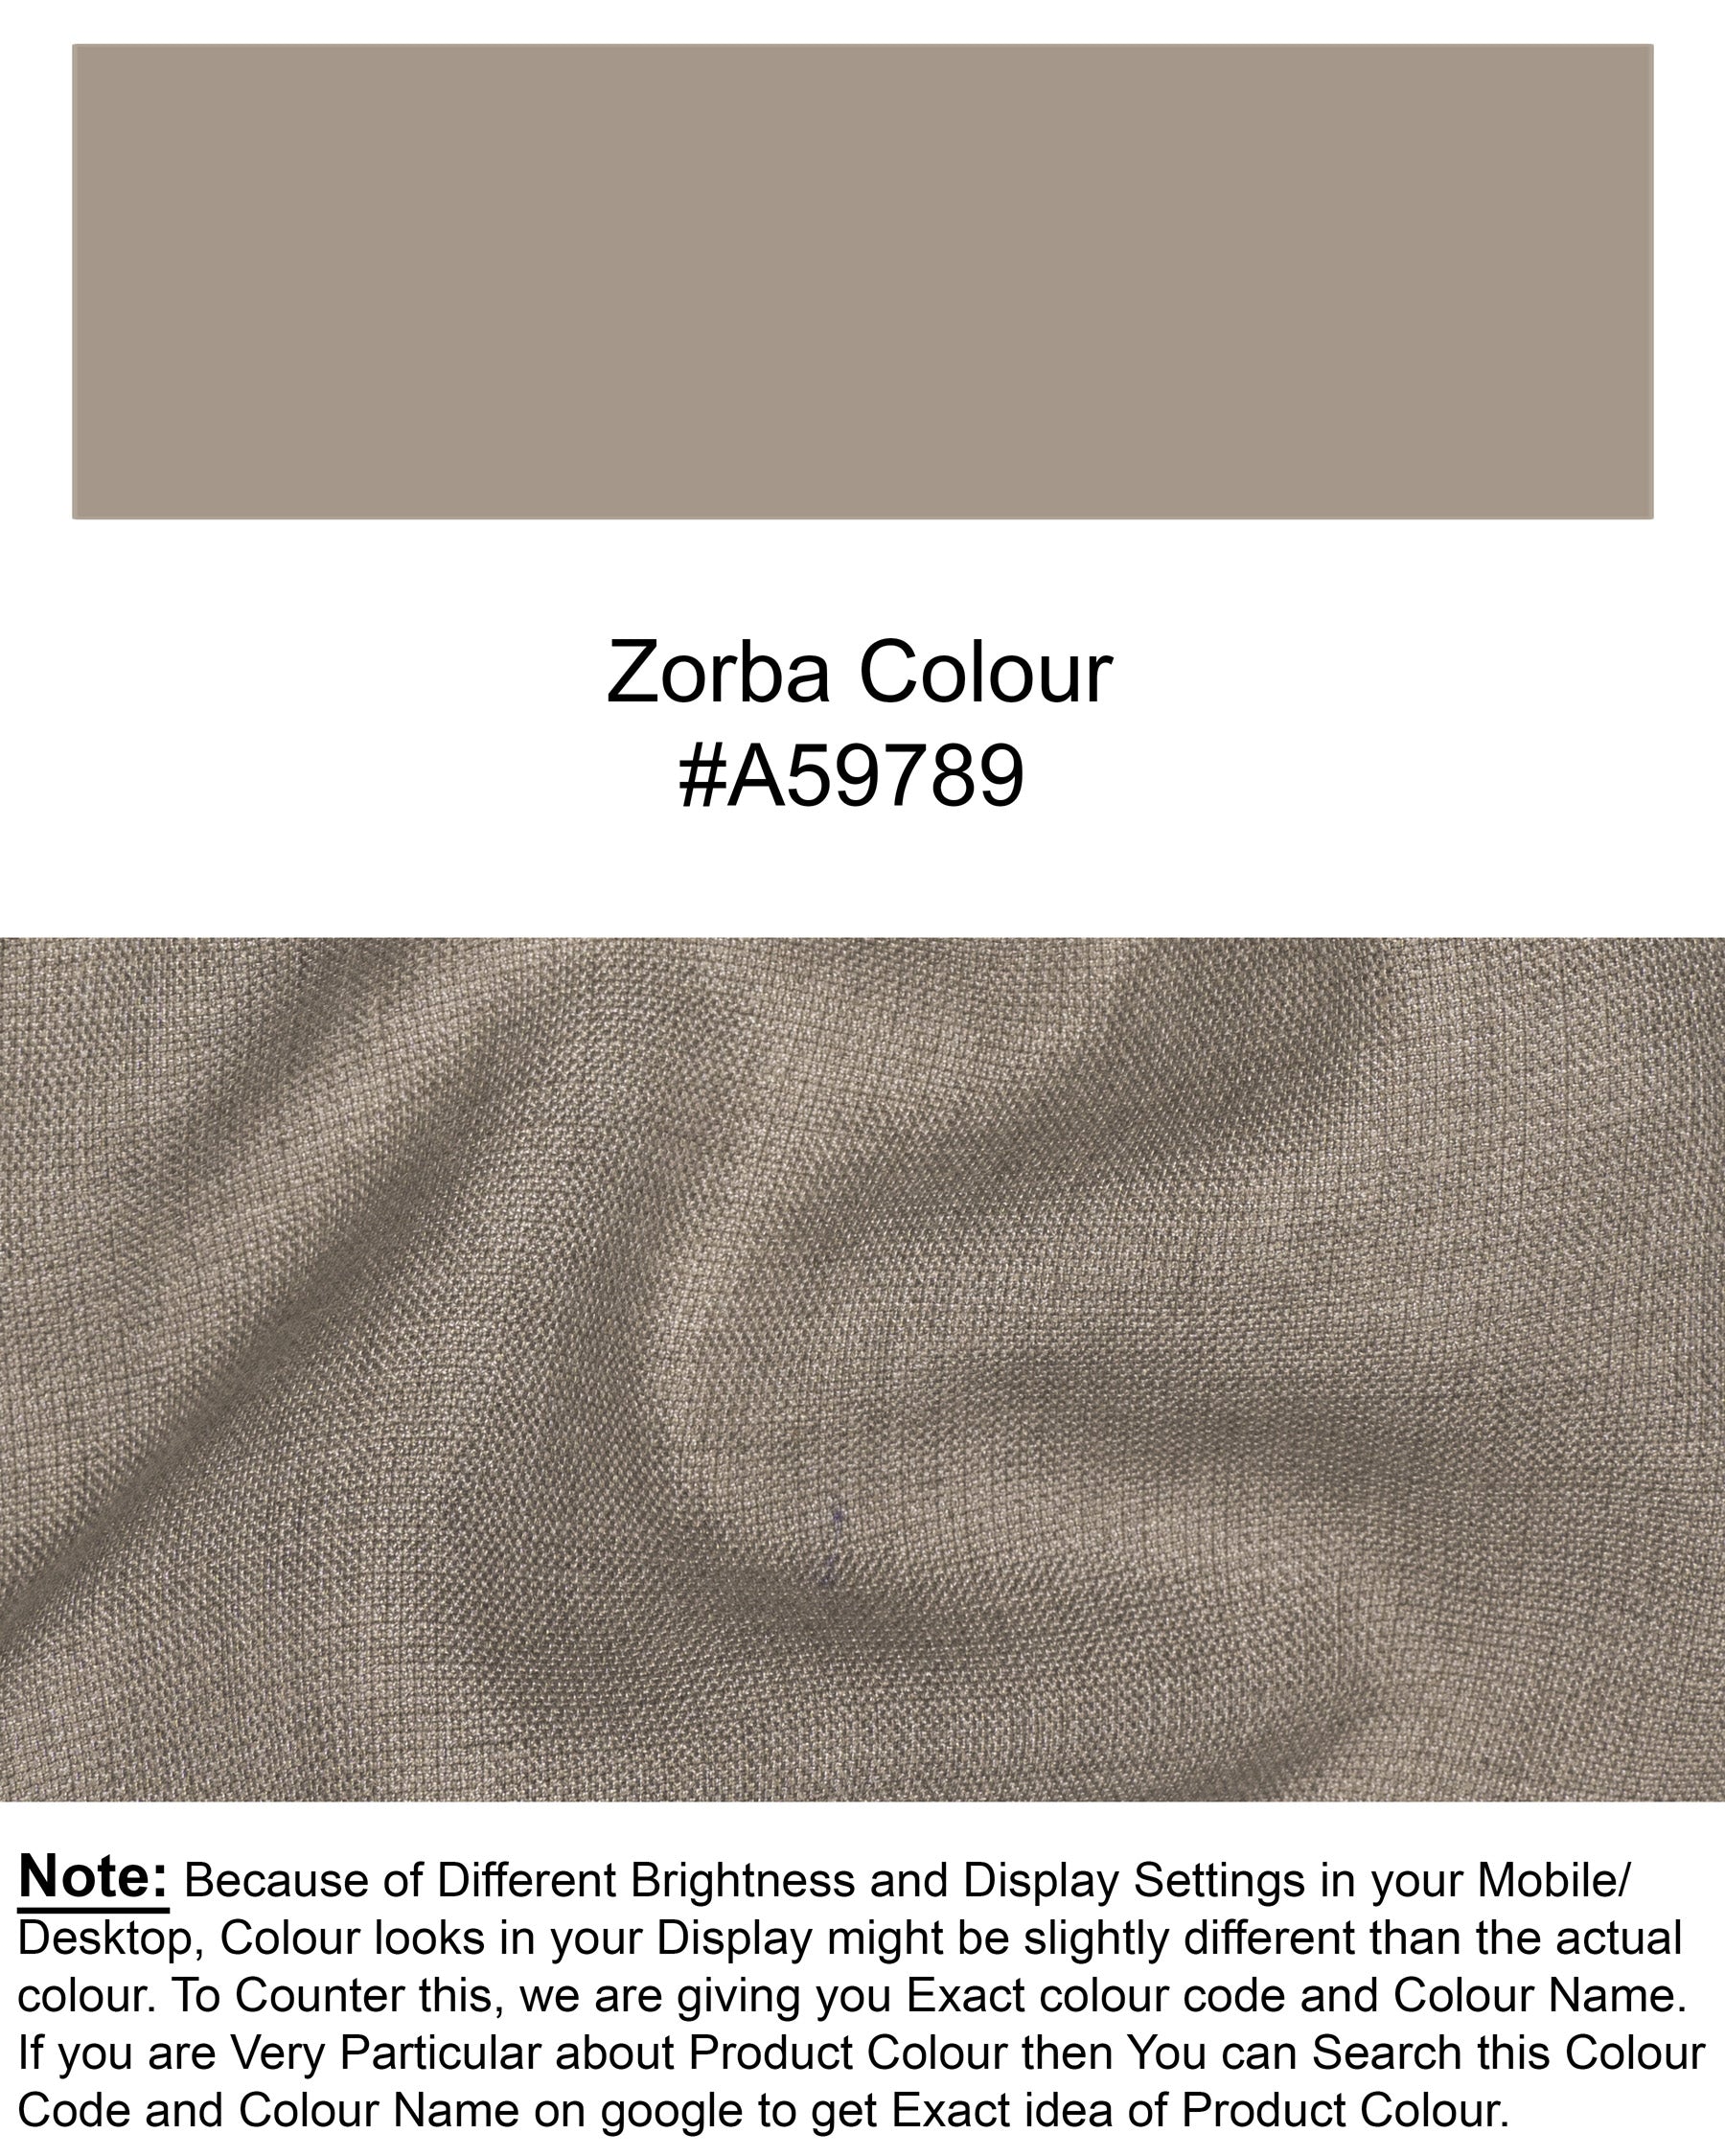 Zorba Grey Woolrich Waistcoat V1475-36, V1475-38, V1475-40, V1475-42, V1475-44, V1475-46, V1475-48, V1475-50, V1475-52, V1475-54, V1475-56, V1475-58, V1475-60